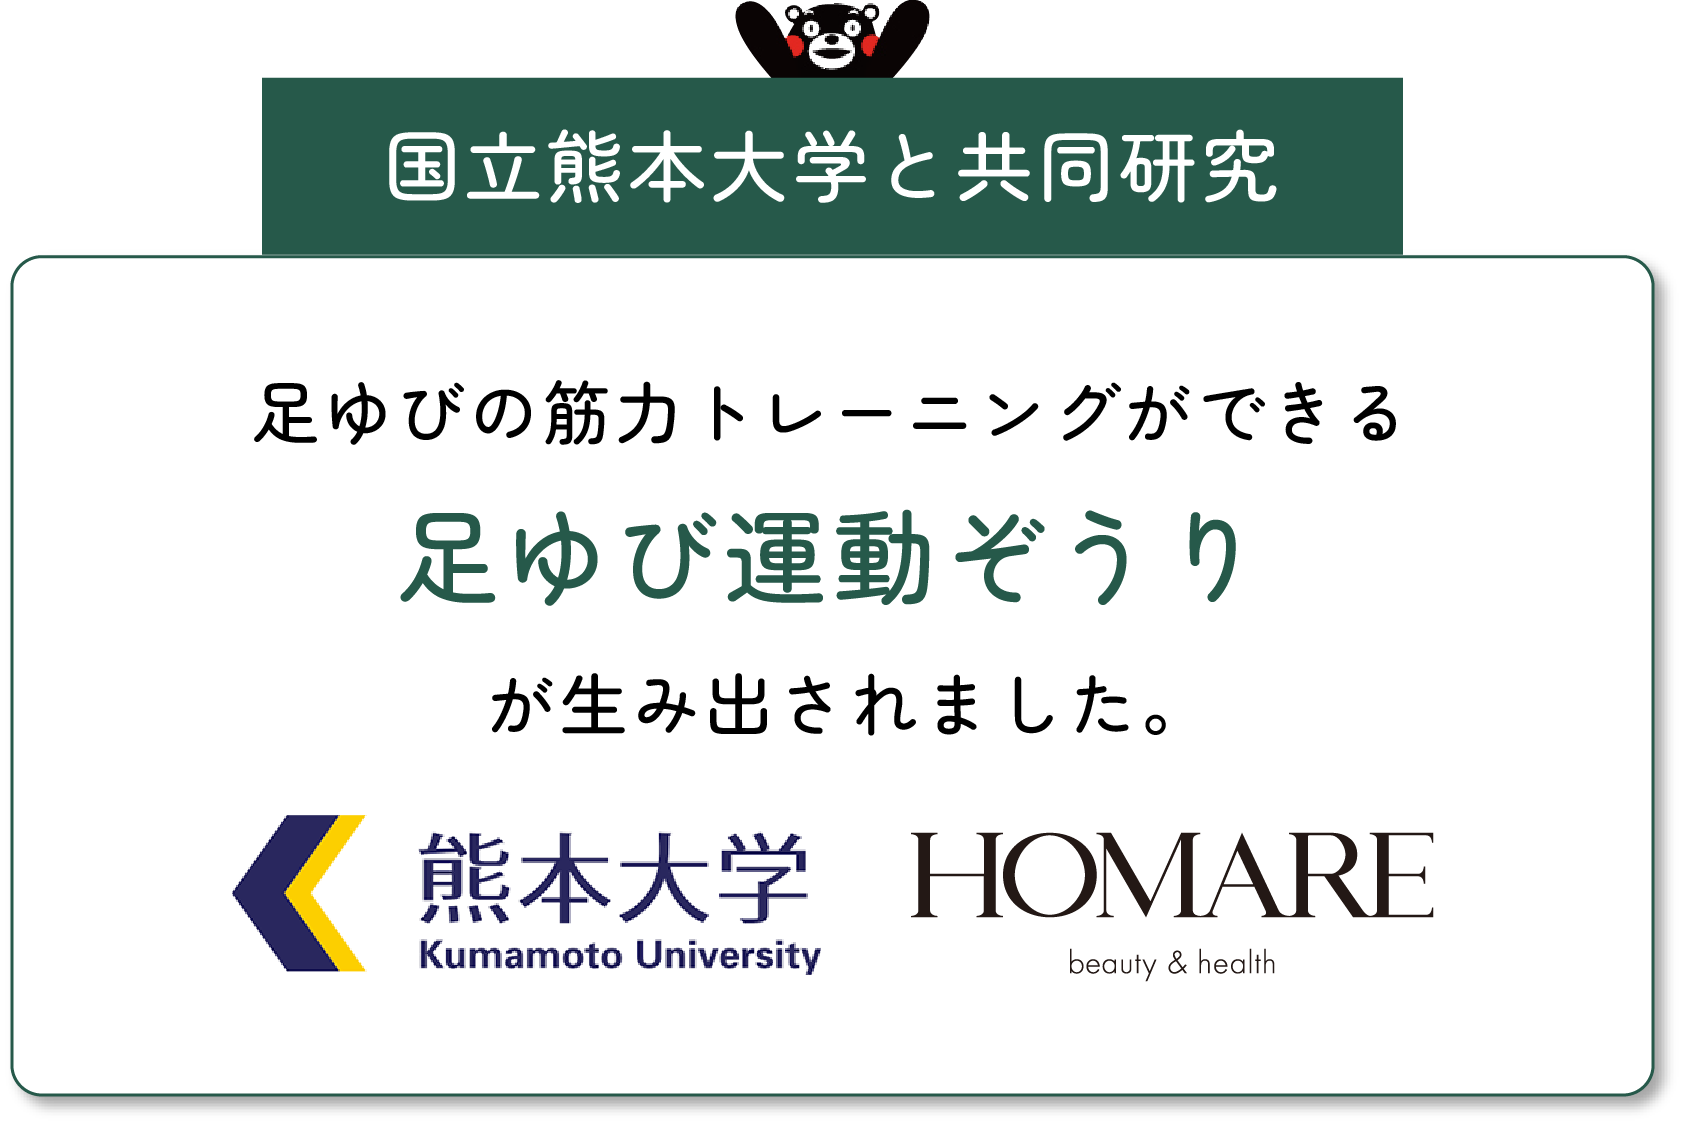 国立熊本大学と共同研究